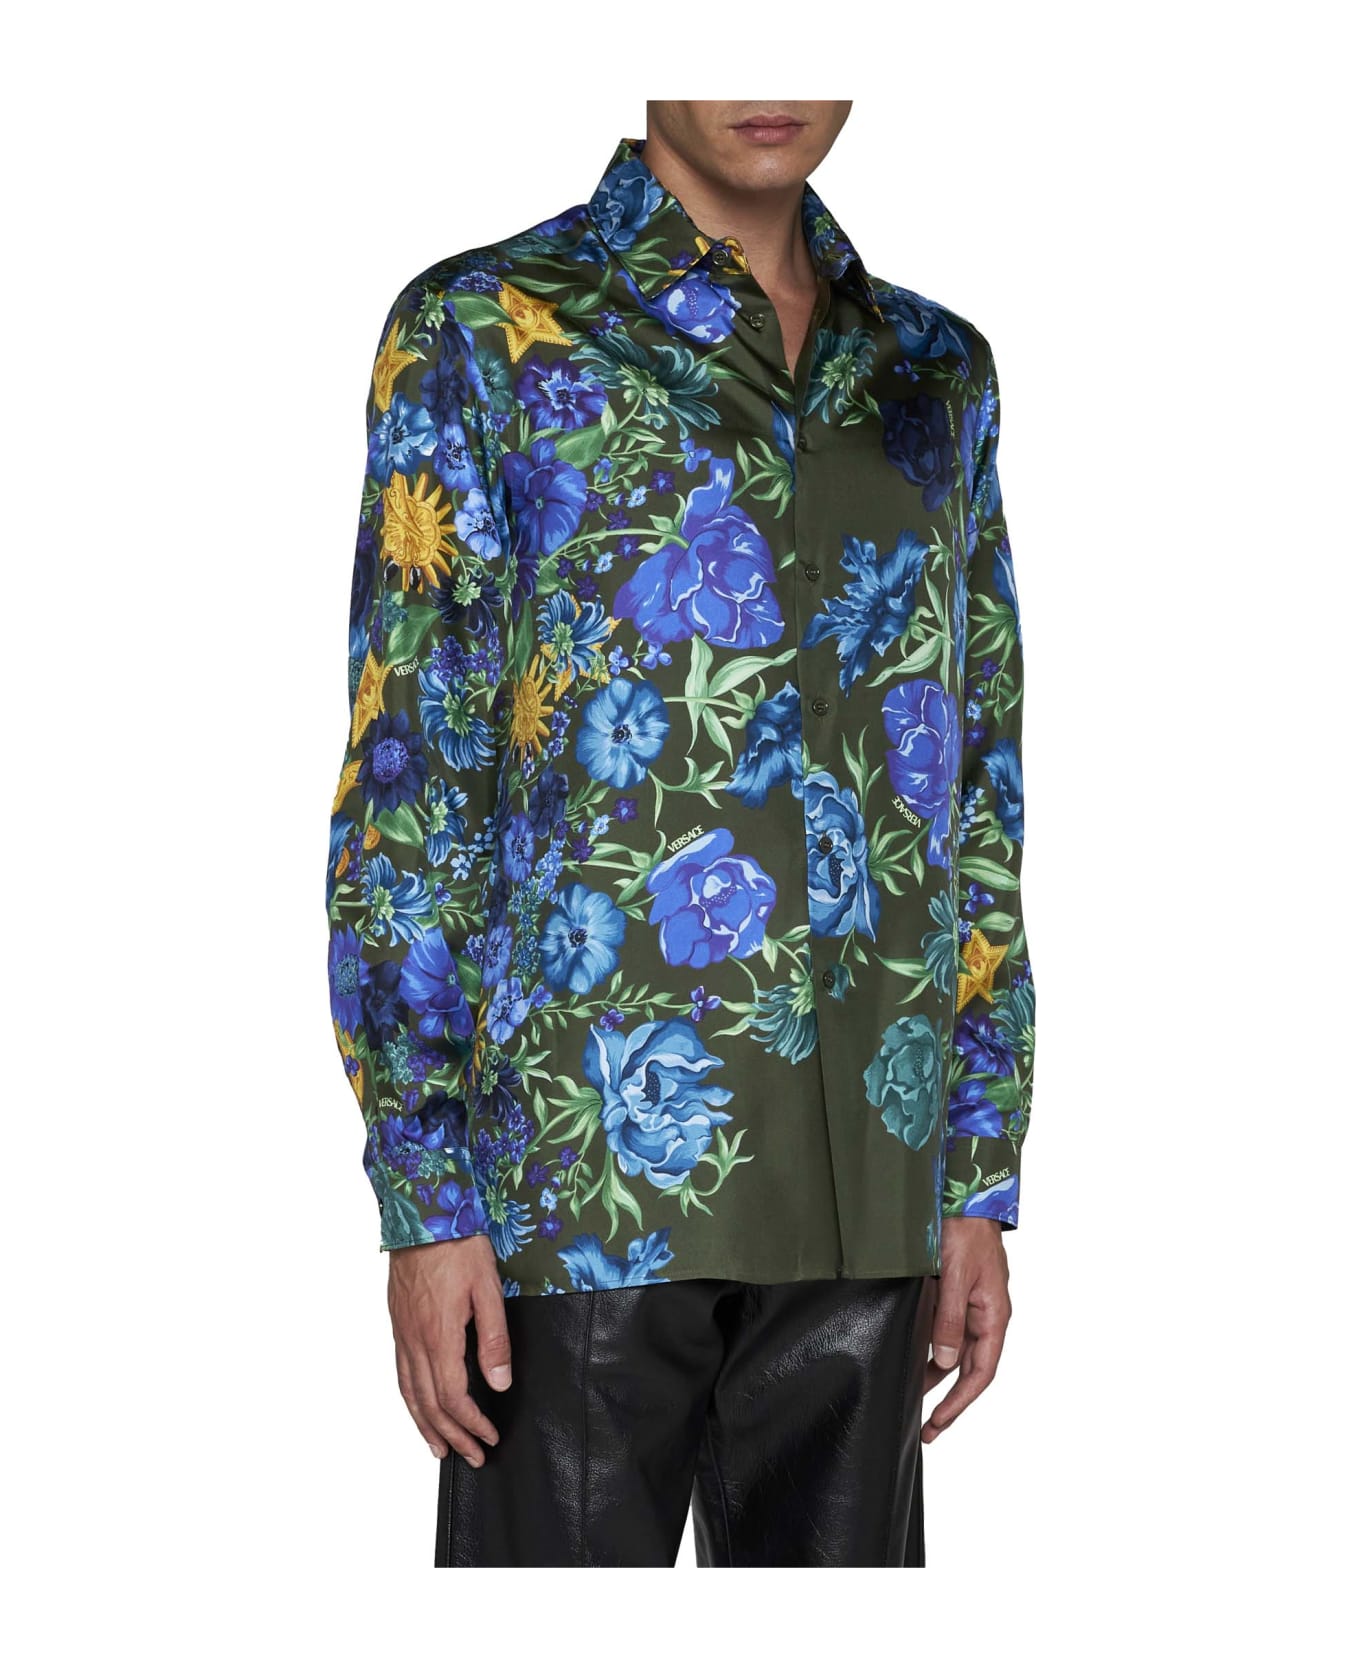 Versace Multicolor Floral Print Shirt - Khaki multicolor